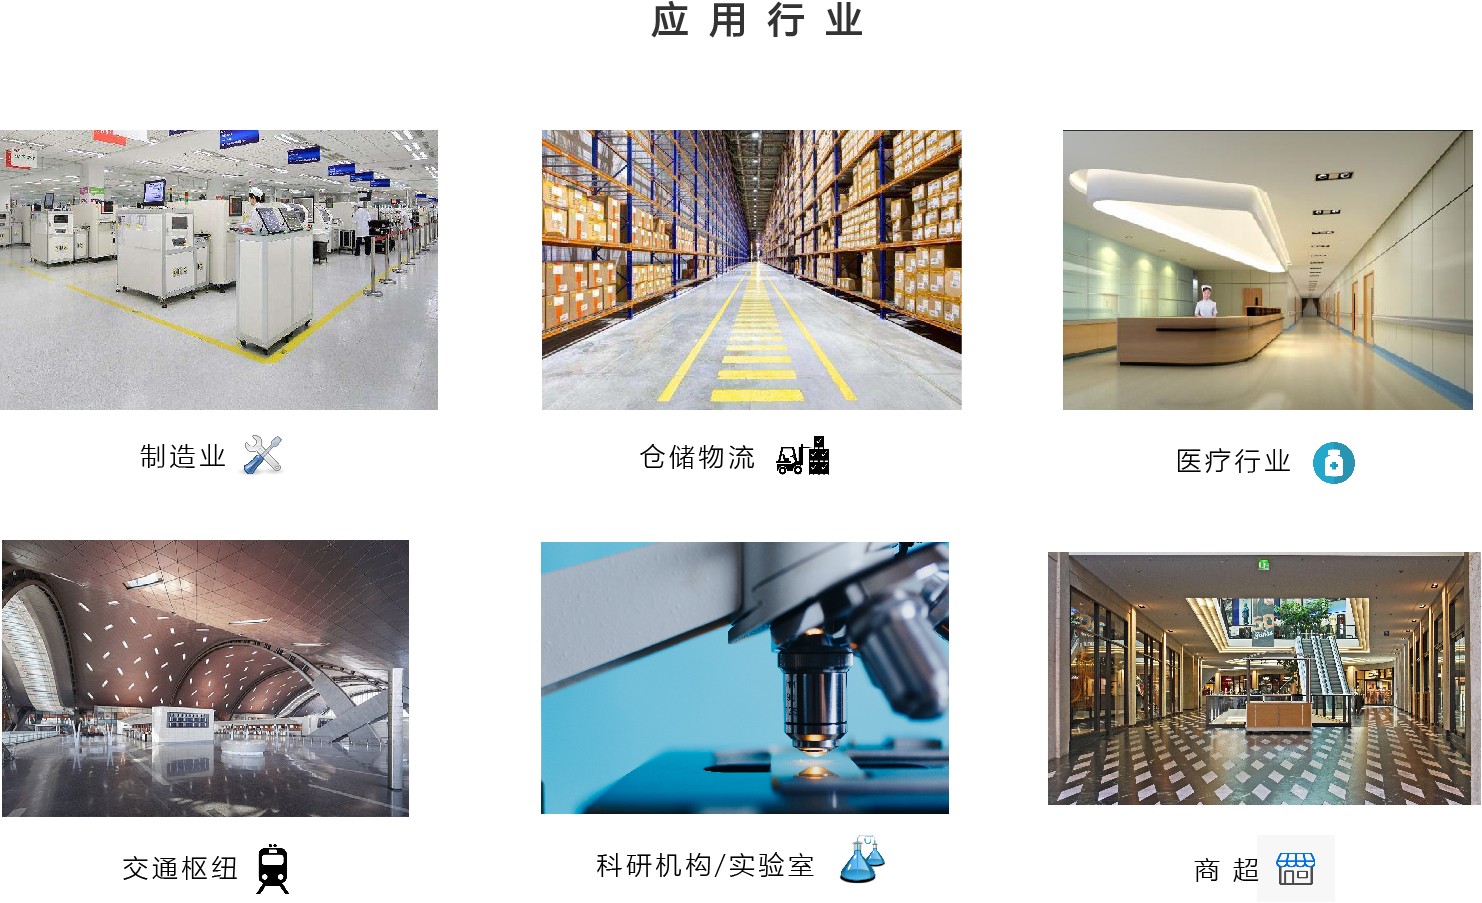 关于当前产品abg欧博官方网站·(中国)官方网站的成功案例等相关图片